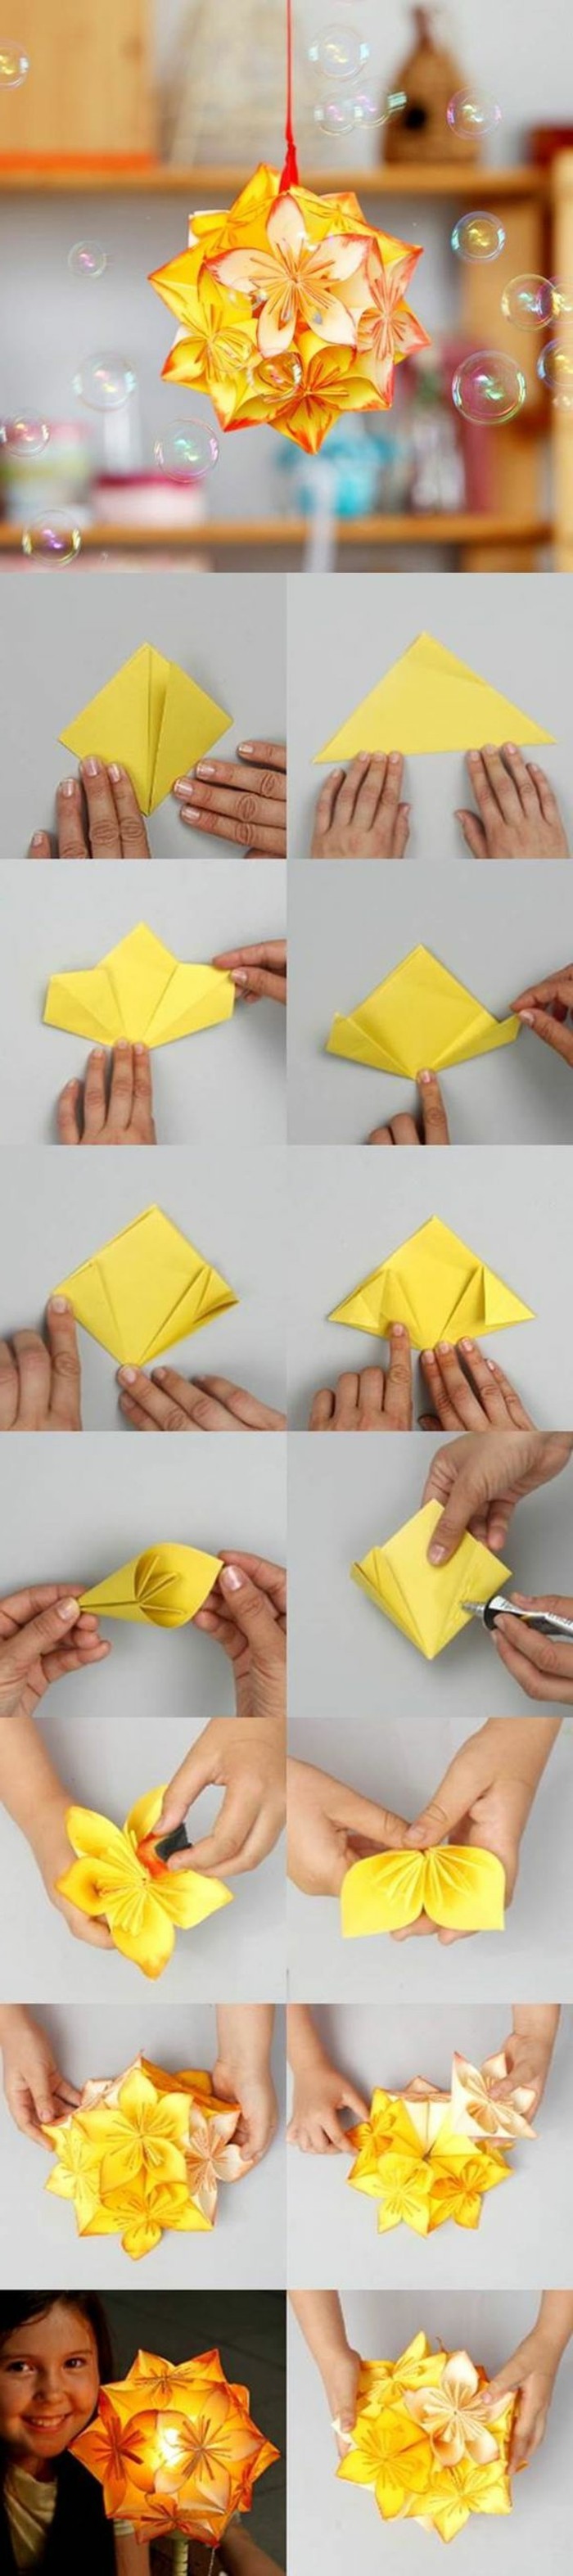 origami bora origami-sklopivi instrukcije origami-sklopivi tehnika foldingmanuals-papir